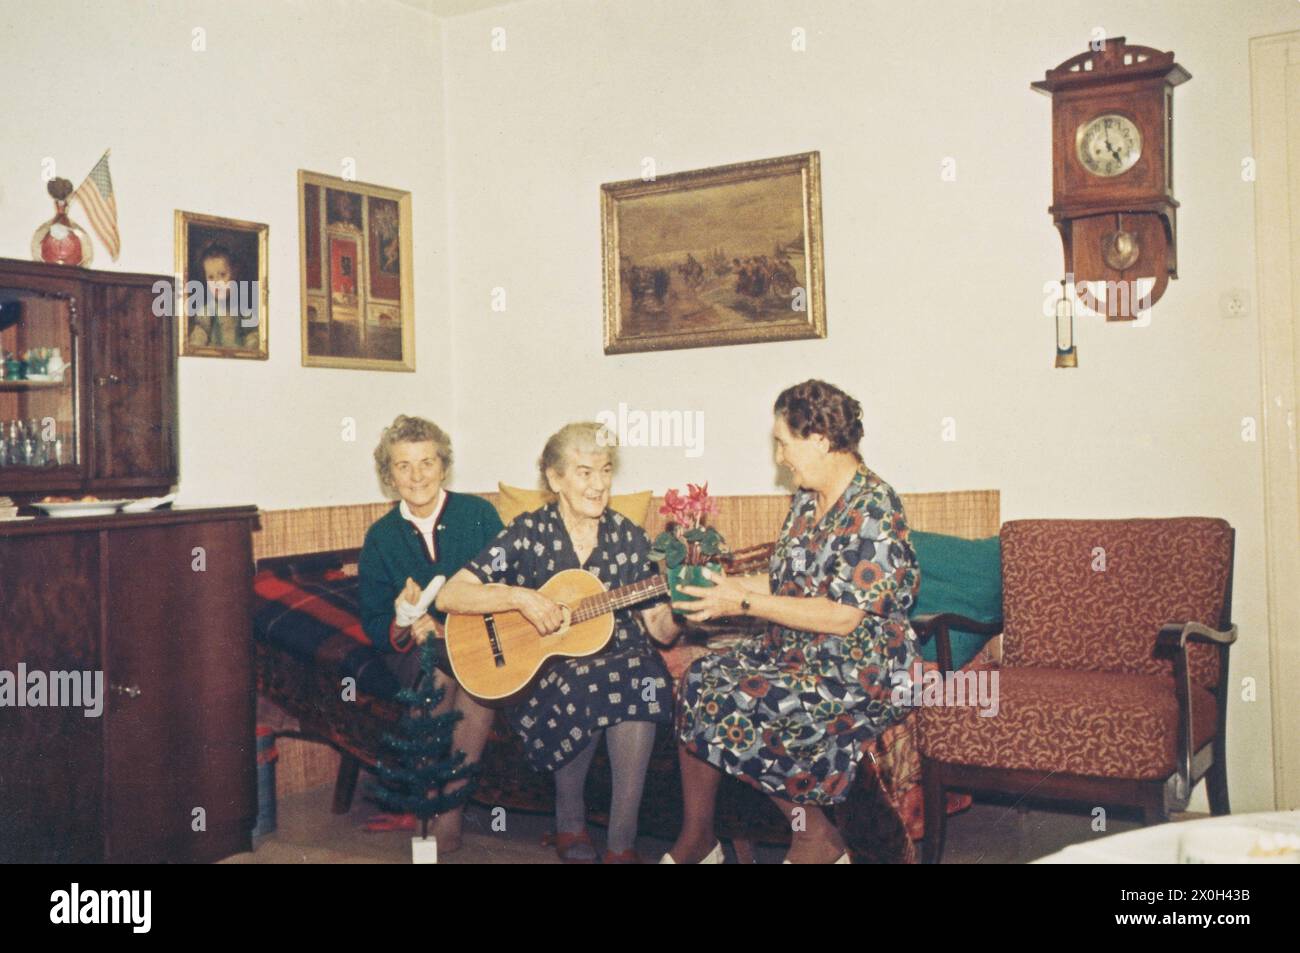 In un soggiorno tre donne in abiti sono seduti su un divano. Uno ha un bendaggio sul suo dito (1° da sinistra), uno suona una chitarra (2° da sinistra) e il terzo tiene una poinsettia nelle sue mani (3° da sinistra). [traduzione automatica] Foto Stock